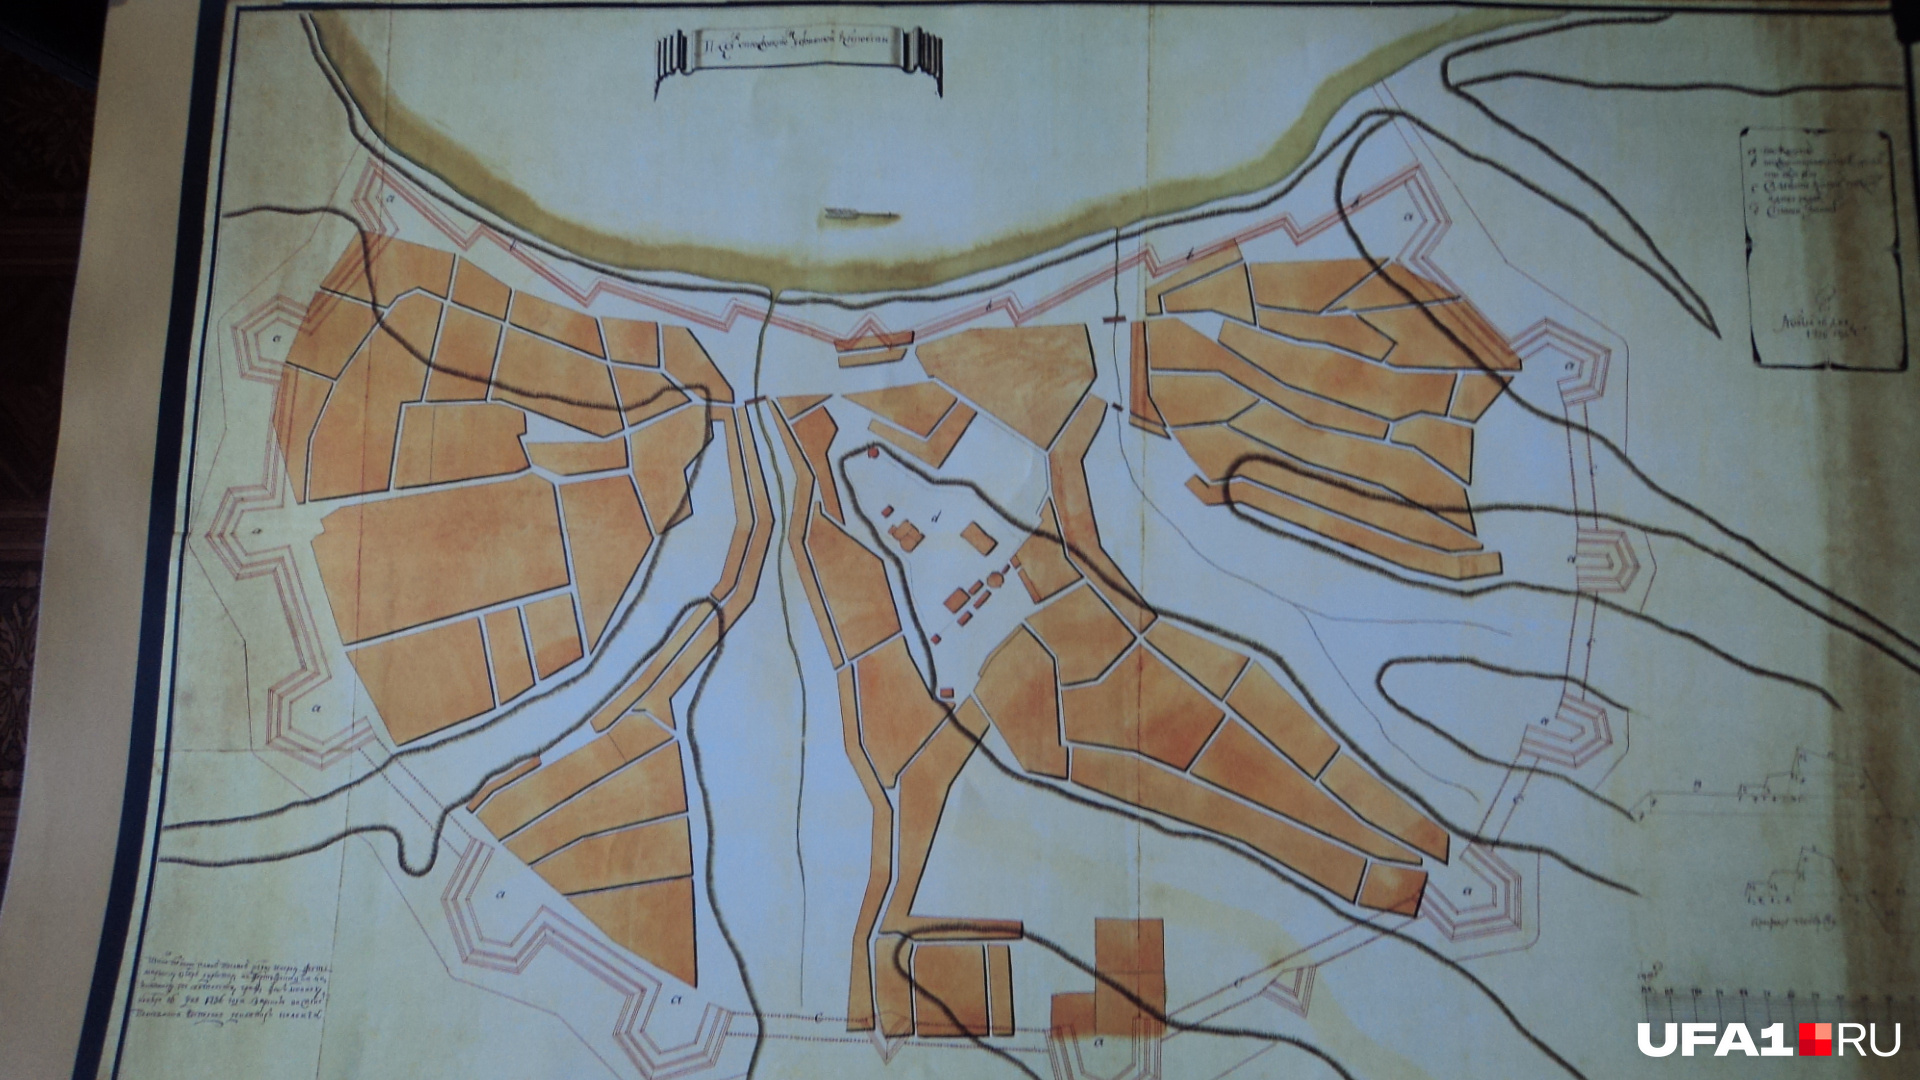 Этот план города датируется 1745 годом. Пунктирной линией здесь обозначено укрепление Уфы — оно проходило через городище, где позже и нашли деревянные элементы